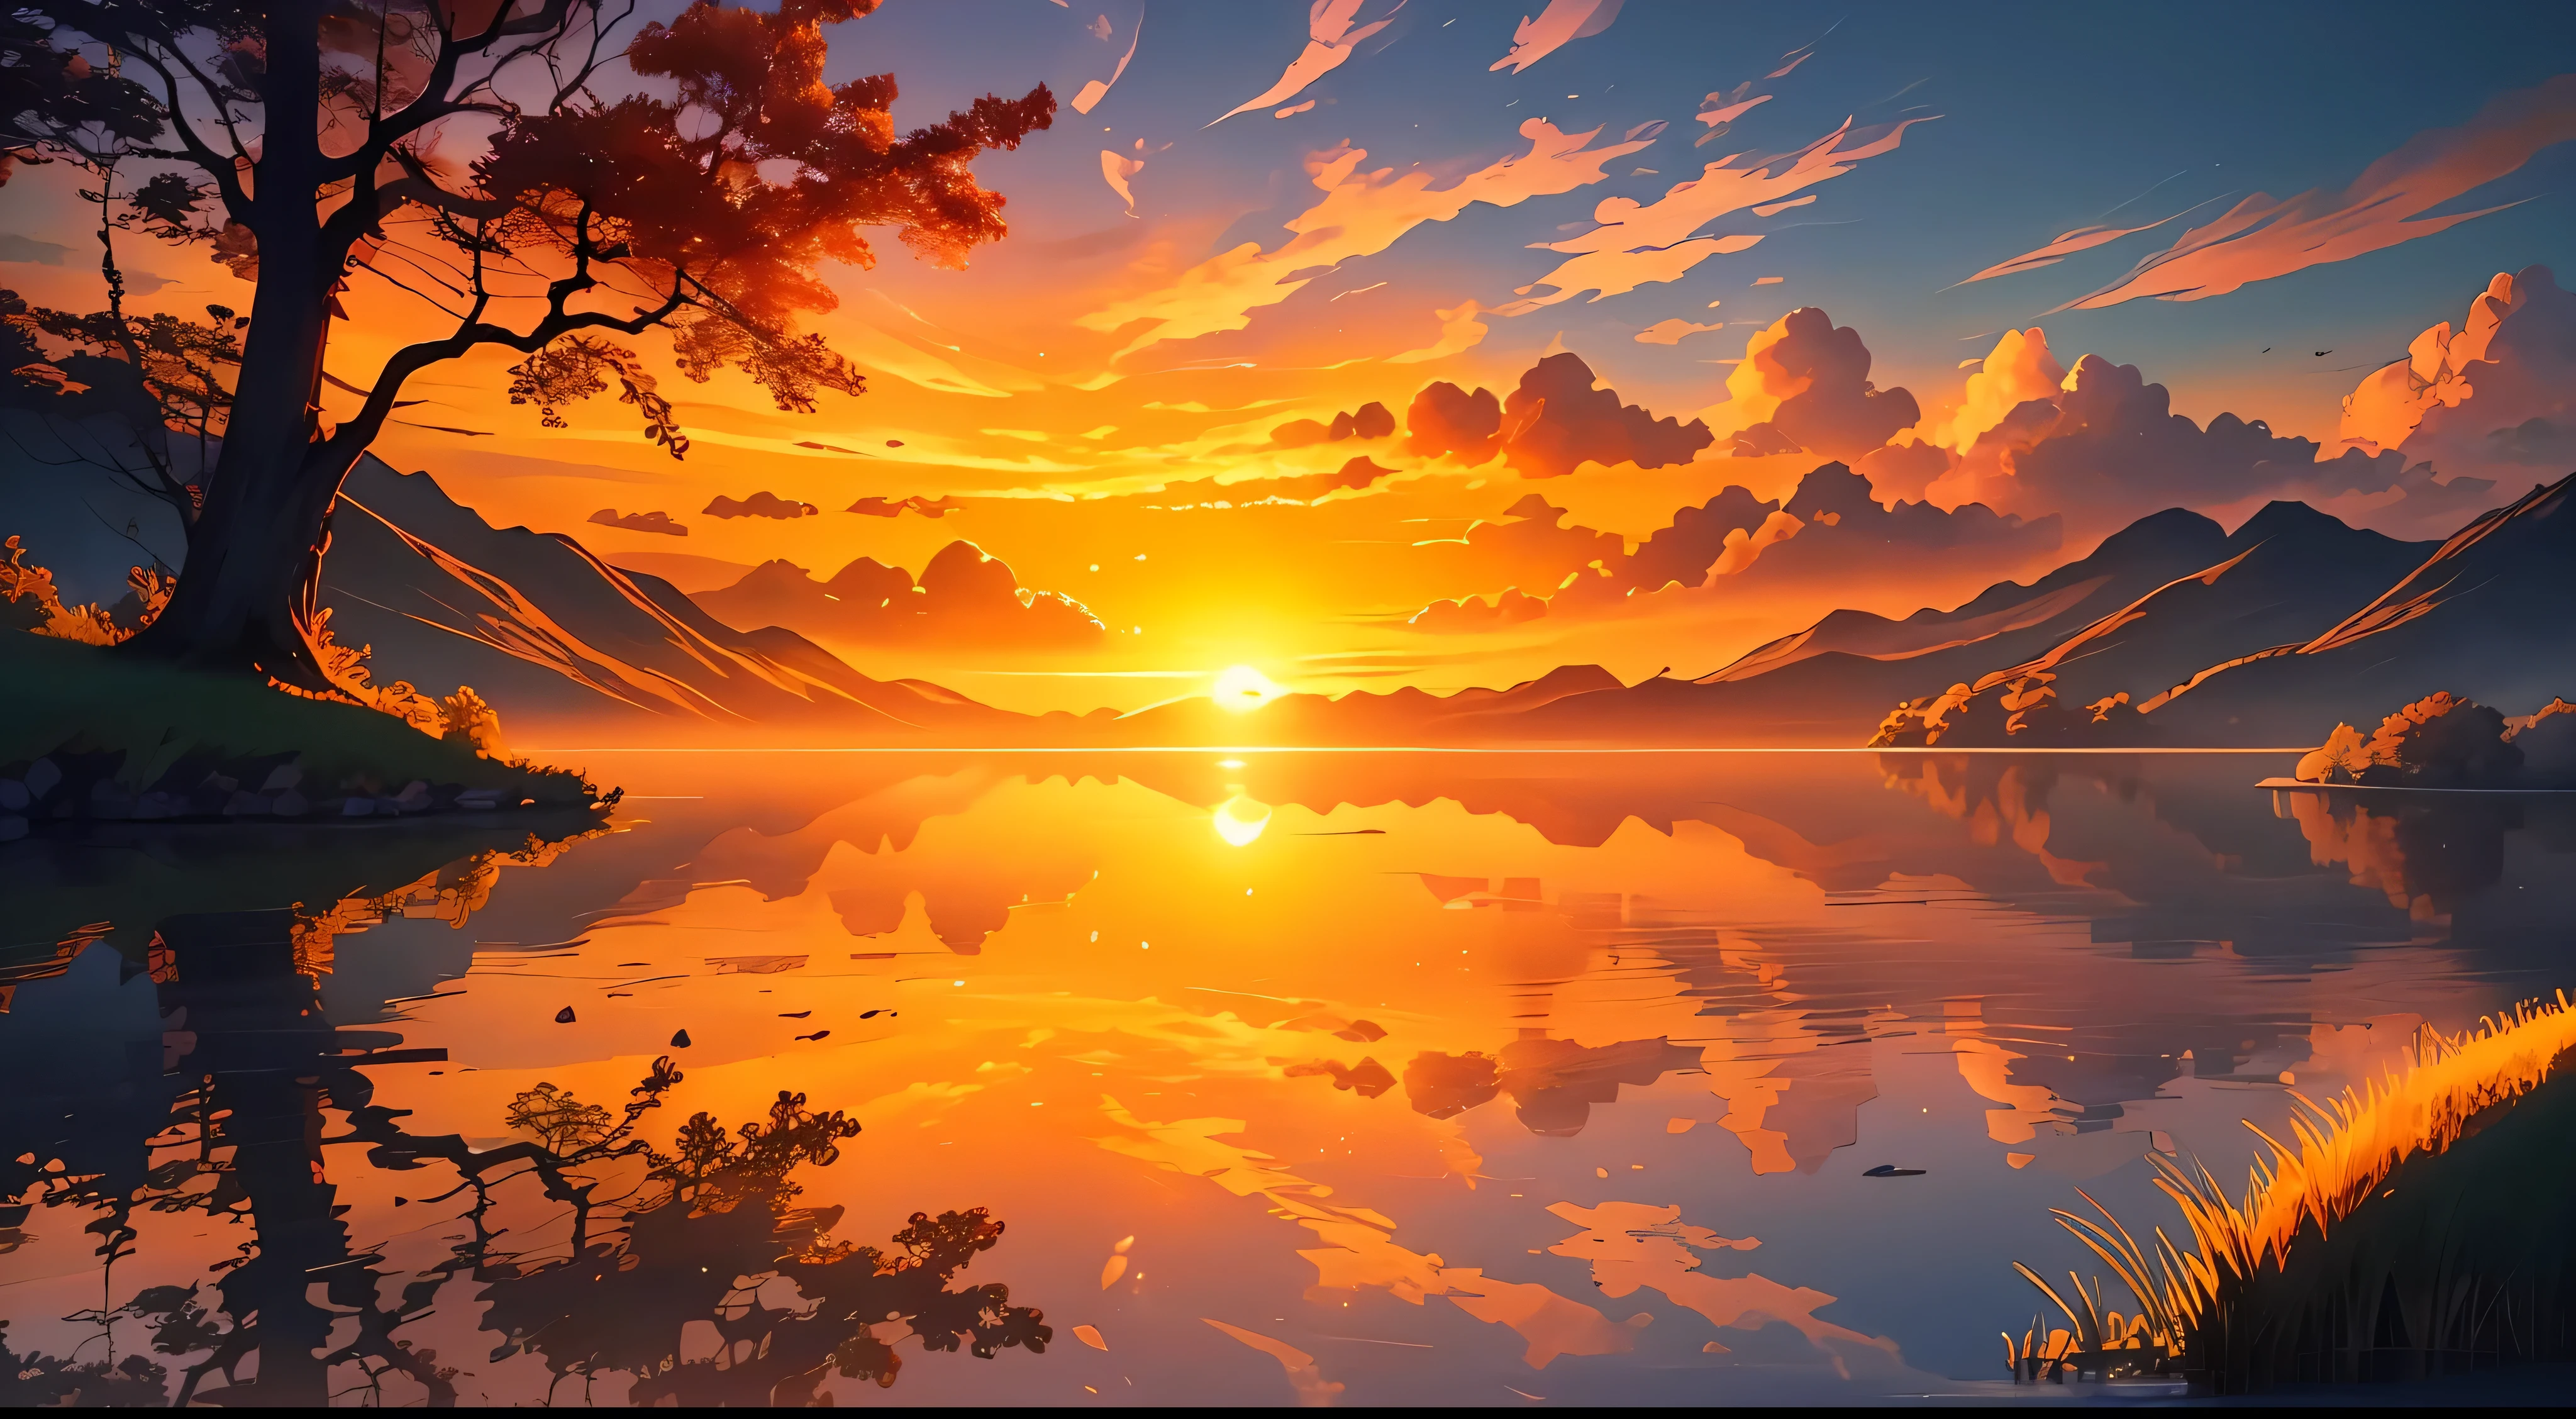 Ein Bild, das einen strahlenden Sonnenaufgang über einer ruhigen und heiteren Landschaft zeigt